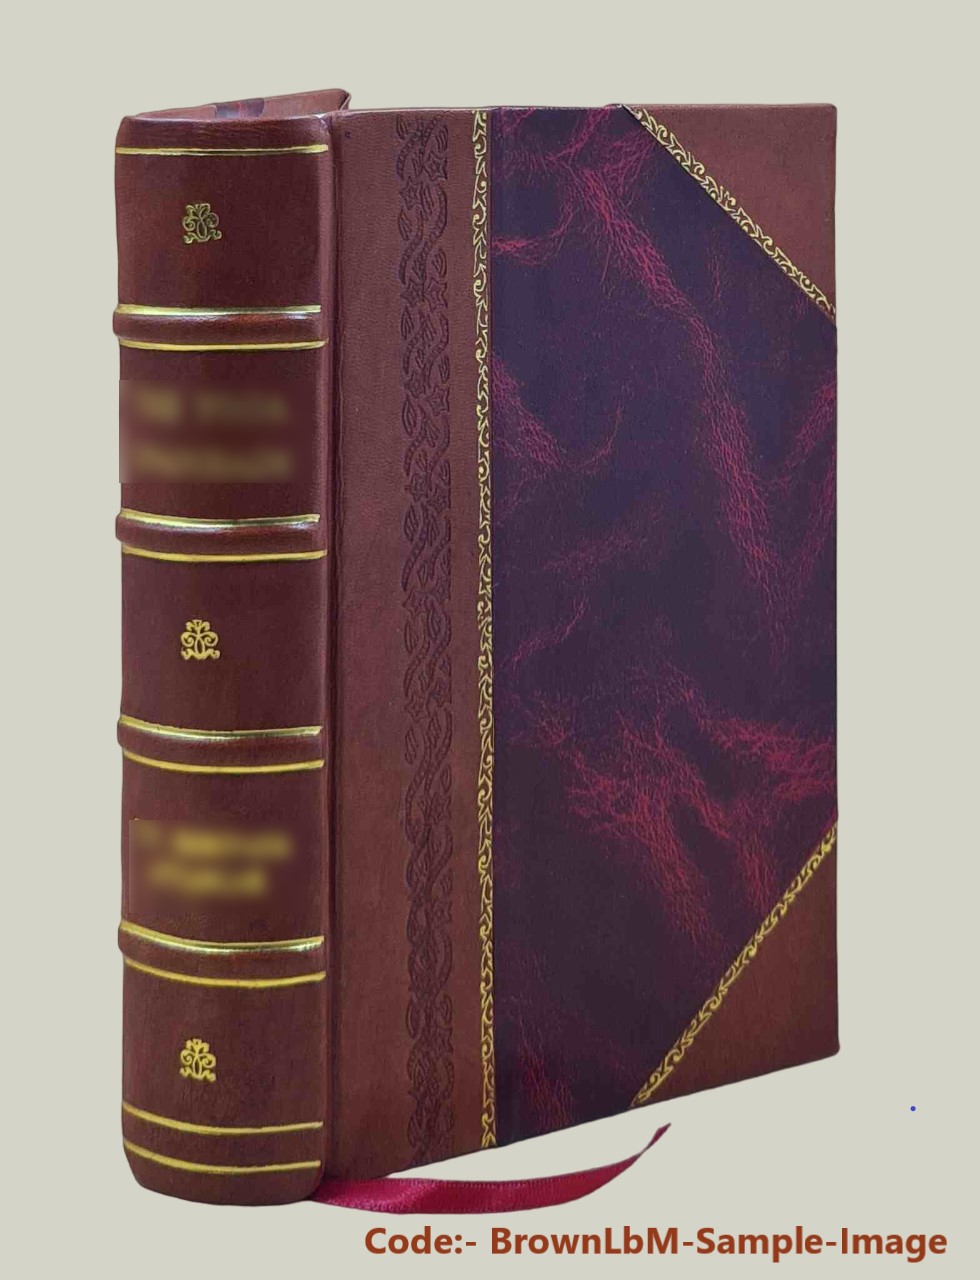 Dictionnaire d'hippiatrique et d'e?quitation : ouvrage ou? se trouvent re?unies toutes les connaissances hippiques / par F. Cardini. v. 1 (Aba-Ixo). 1848[Leather Bound] - Cardini F. Joseph -